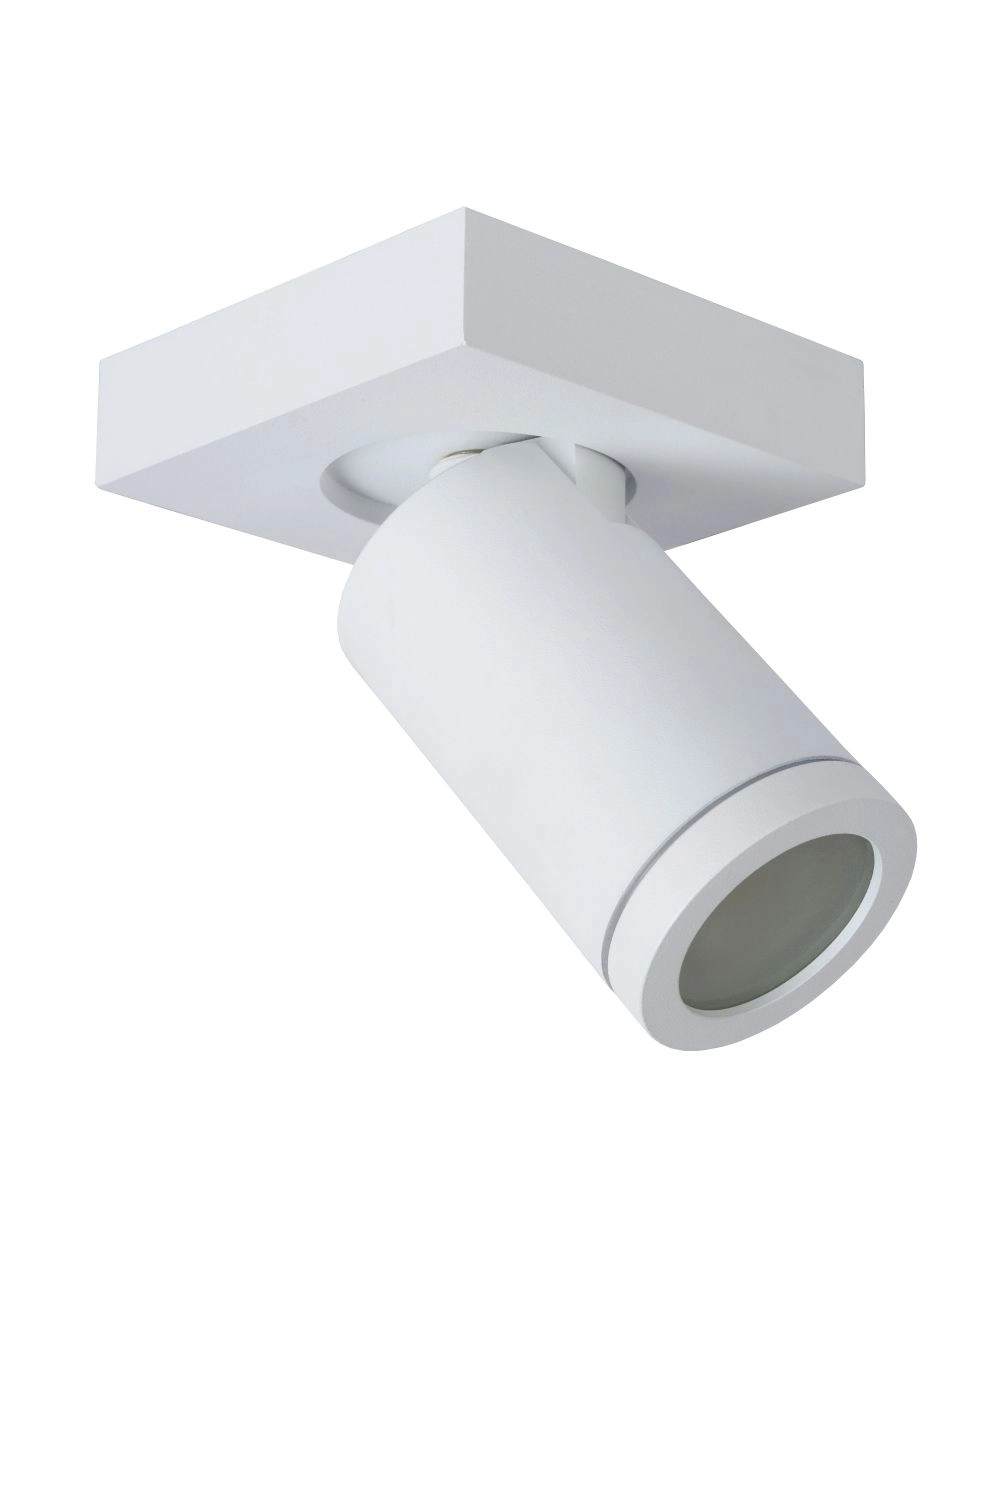 LU 09930/05/31 Lucide TAYLOR - Ceiling spotlight Bathroom - LED Dim to warm - GU10 - 1x5W 2200K/3000